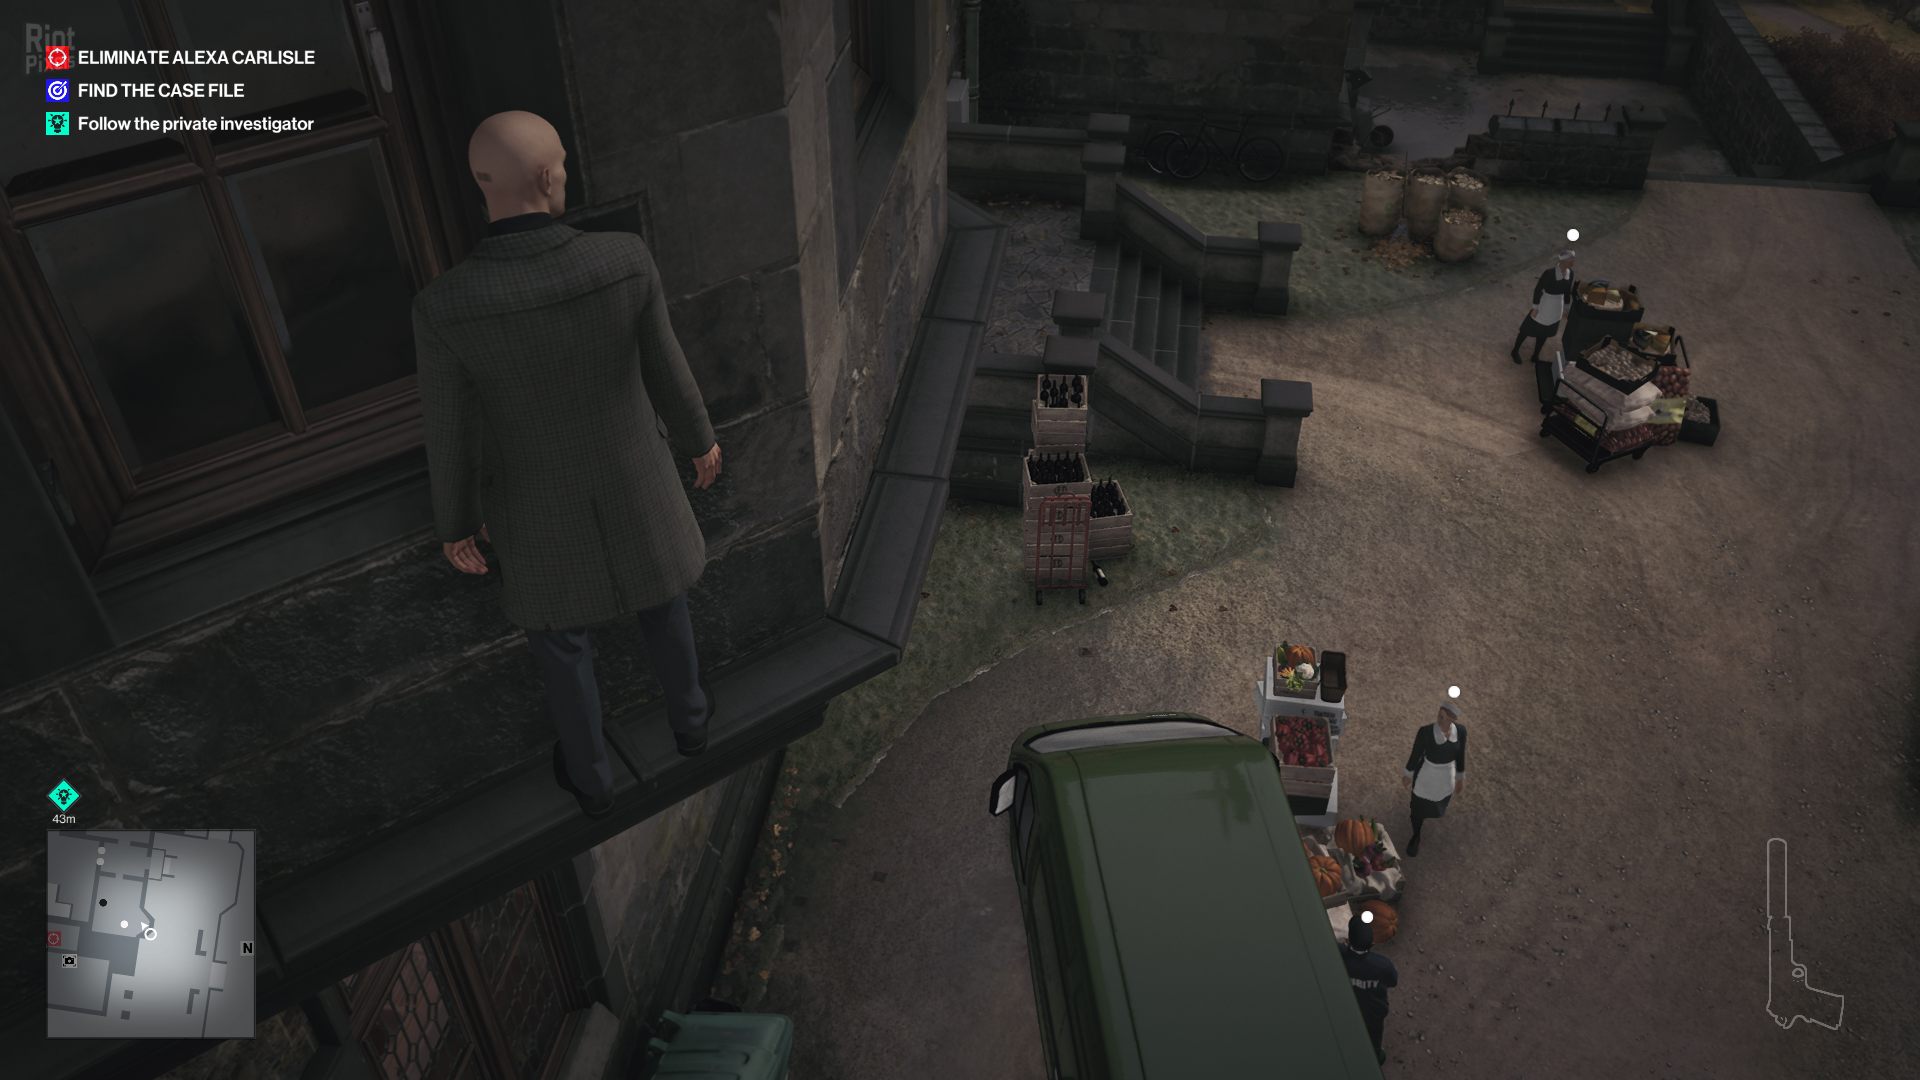 Hitman 3 - game screenshots at Riot Pixels, images